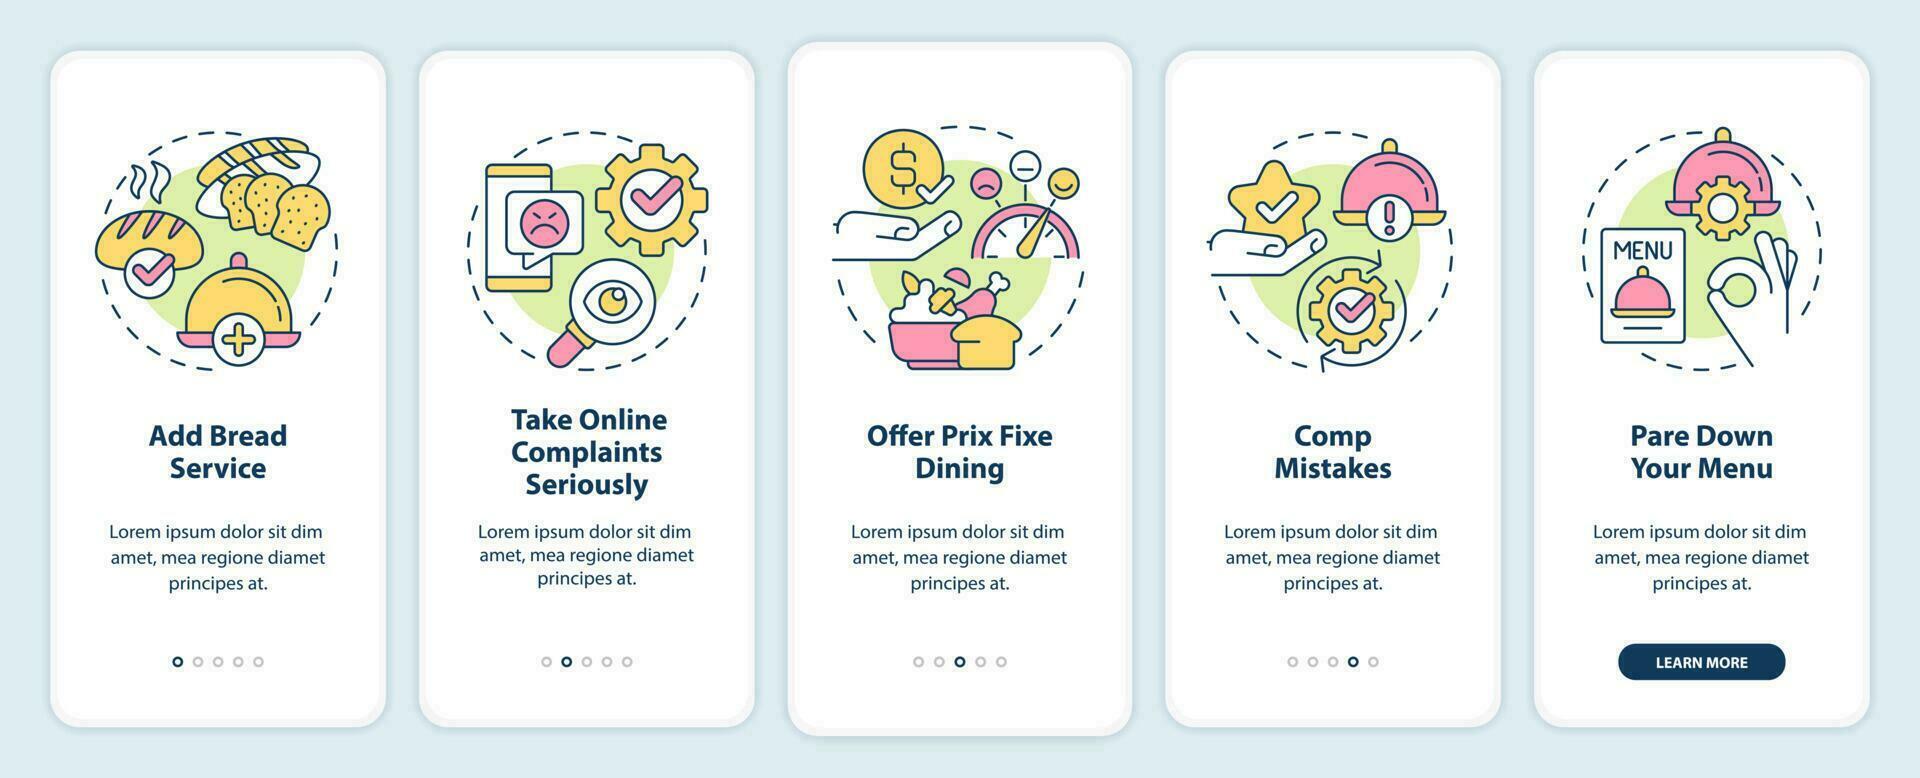 verbeteren restaurant klant tevredenheid onboarding mobiel app scherm. walkthrough 5 stappen bewerkbare grafisch instructies met lineair concepten. ui, ux, gui sjabloon vector